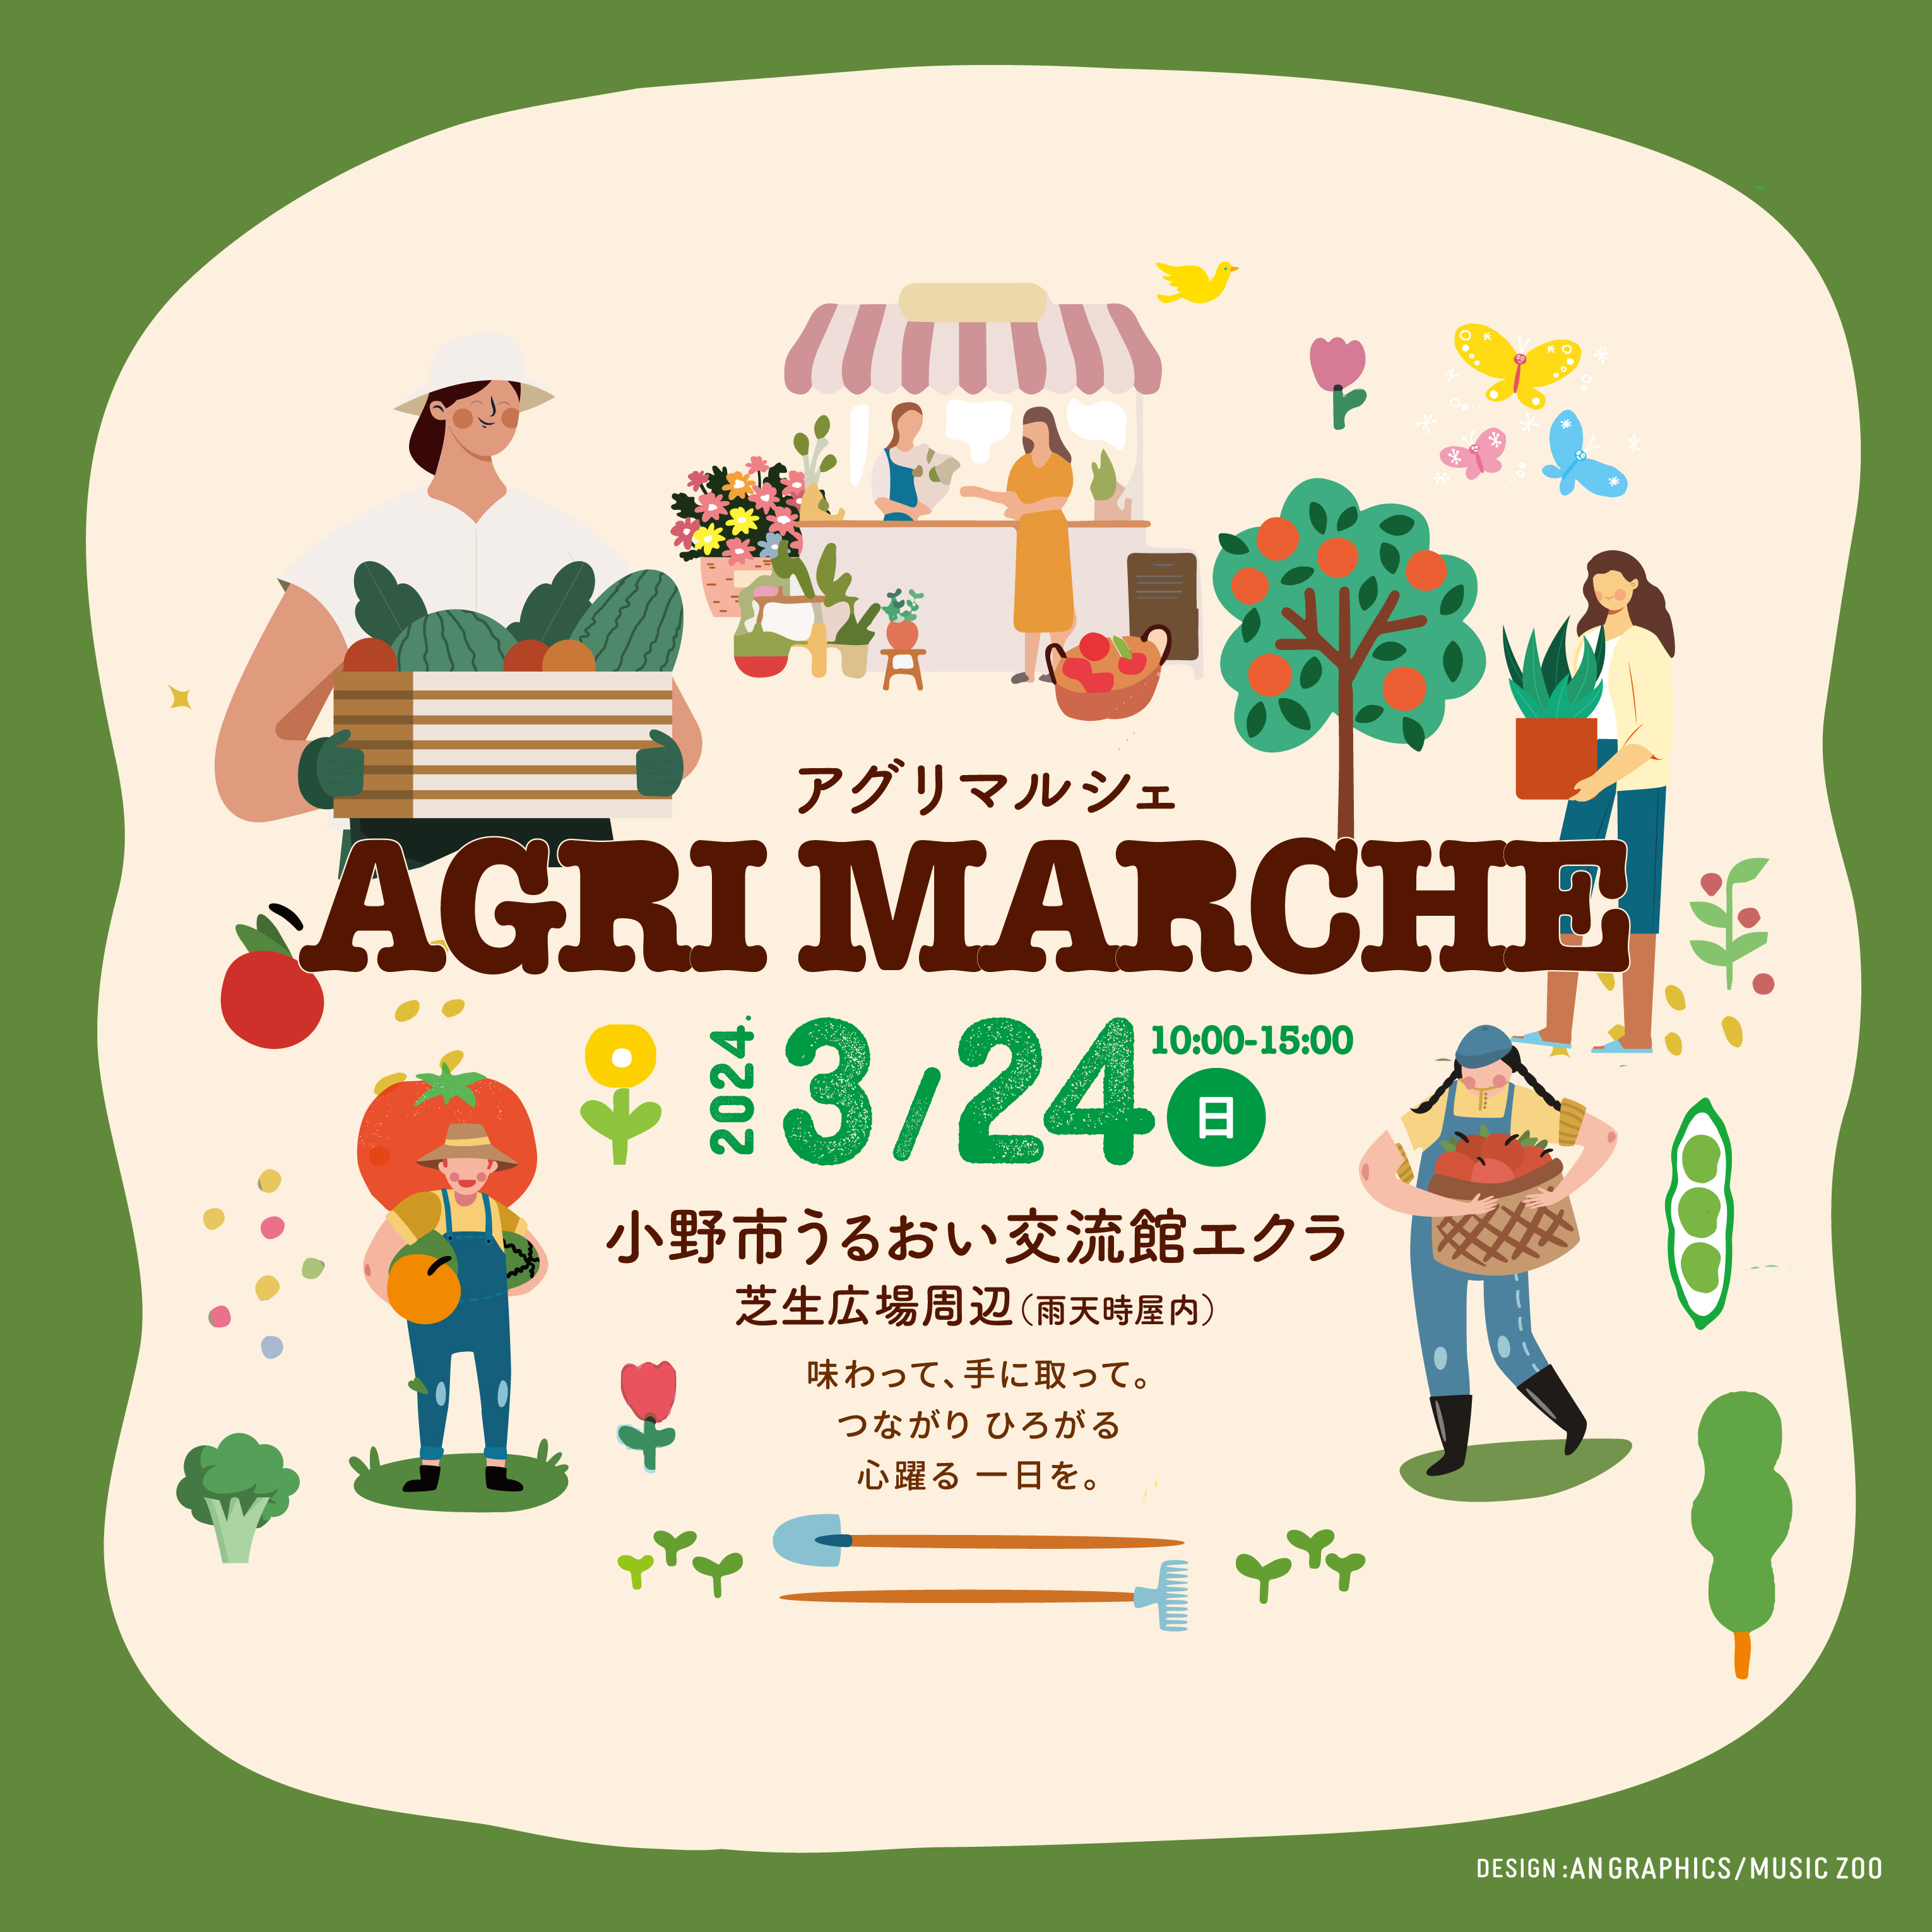 【出店告知】3月24日(日)兵庫県小野市で行われる「アグリマルシェ」に出店いたします。